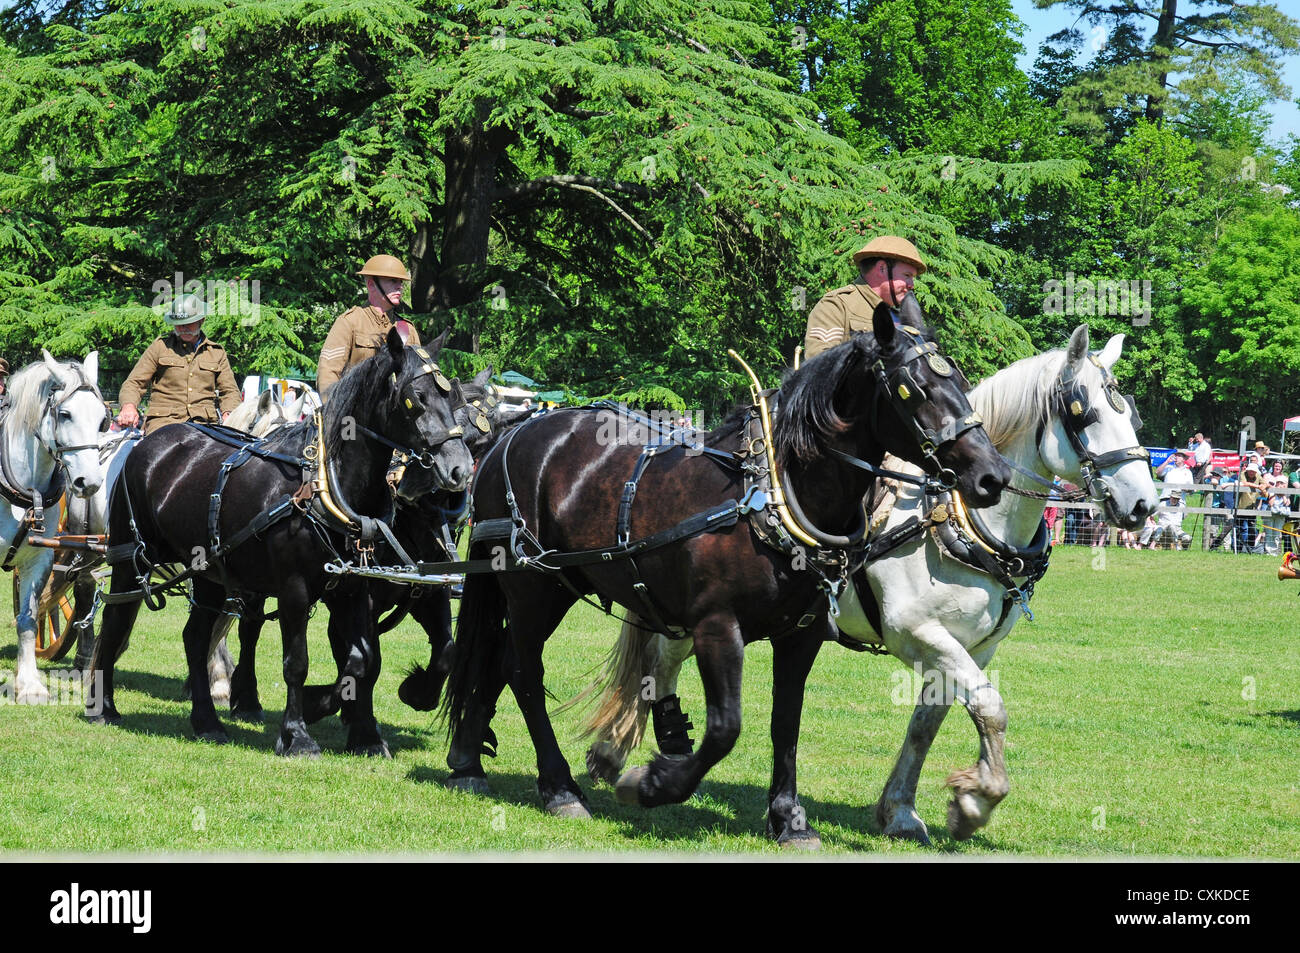 Chevaux lourds dans une équipe lors d'un affichage de la Première Guerre mondiale, l'équipement et types de chevaux utilisés. Banque D'Images